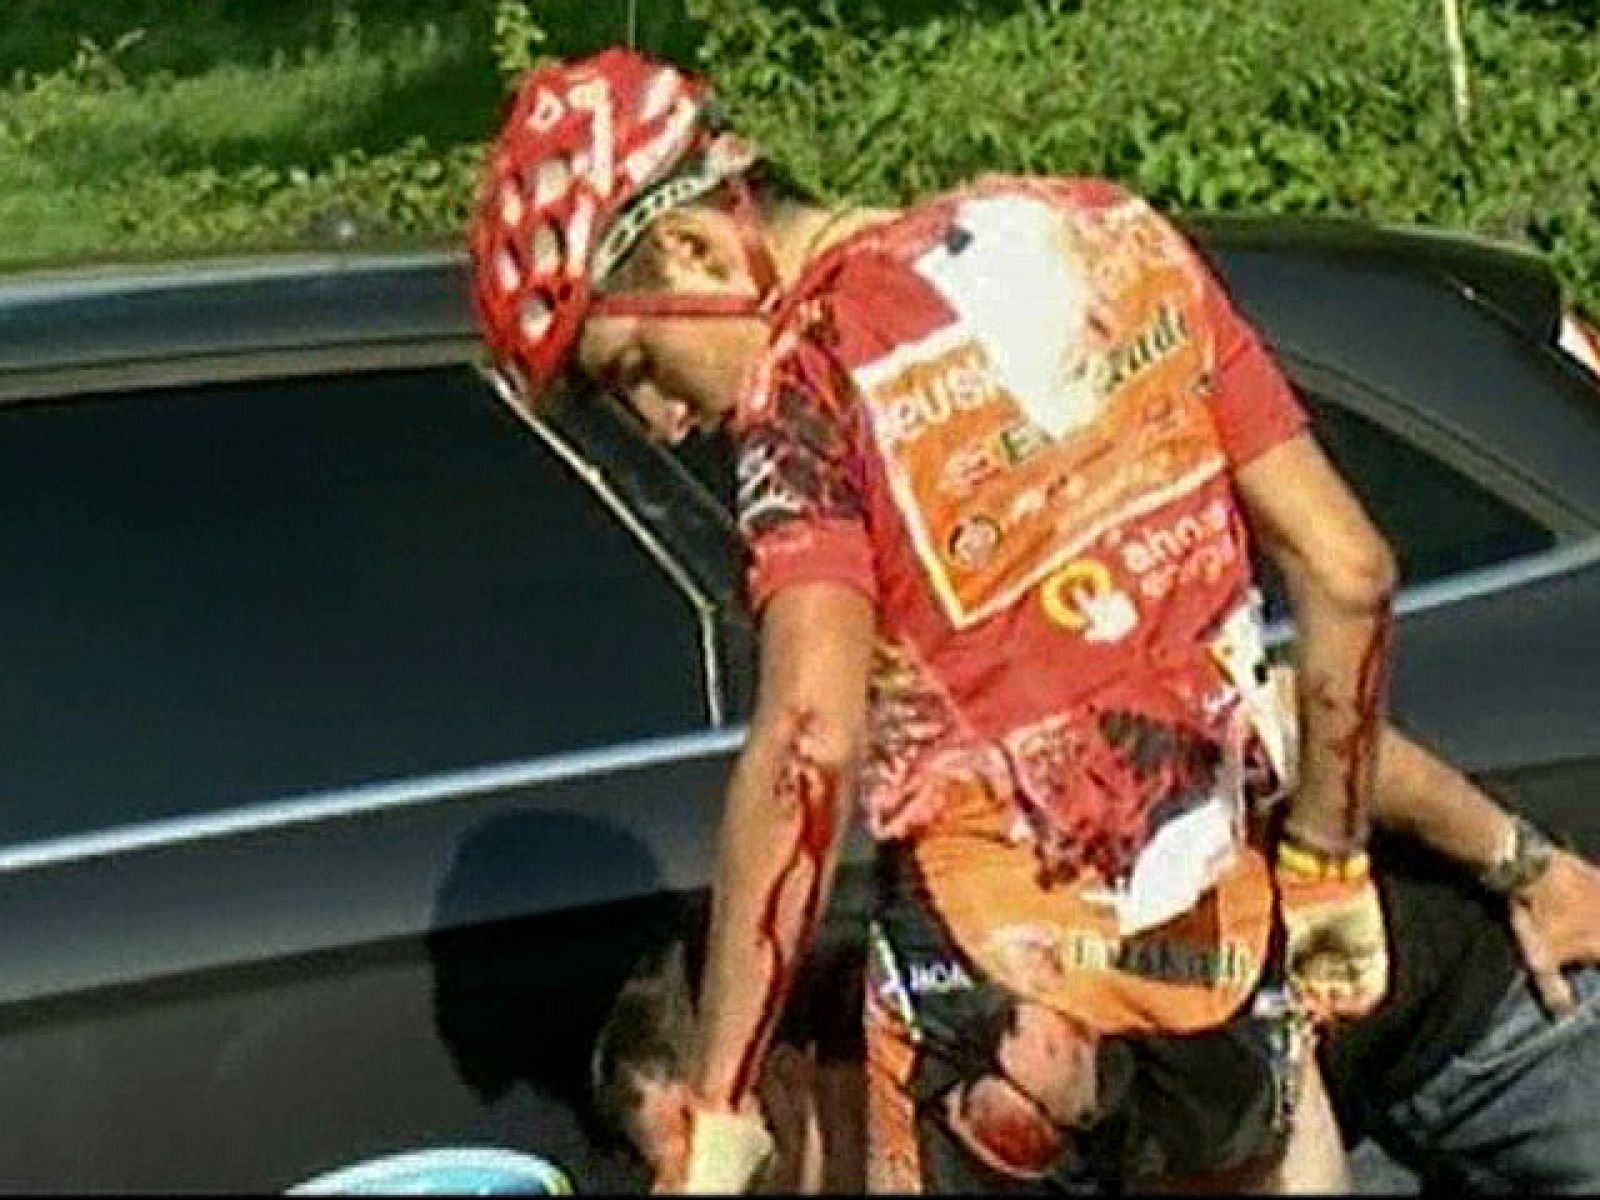 El líder de la presente edición de la Vuelta a España, Igor Antón, ha tenido que abandonar por una caída a 6 kilómetros de la meta. Tiene heridas en el costado y sobre todo tiene dañado el codo. Con él, también se ha ido al suelo su compañero Egoi M